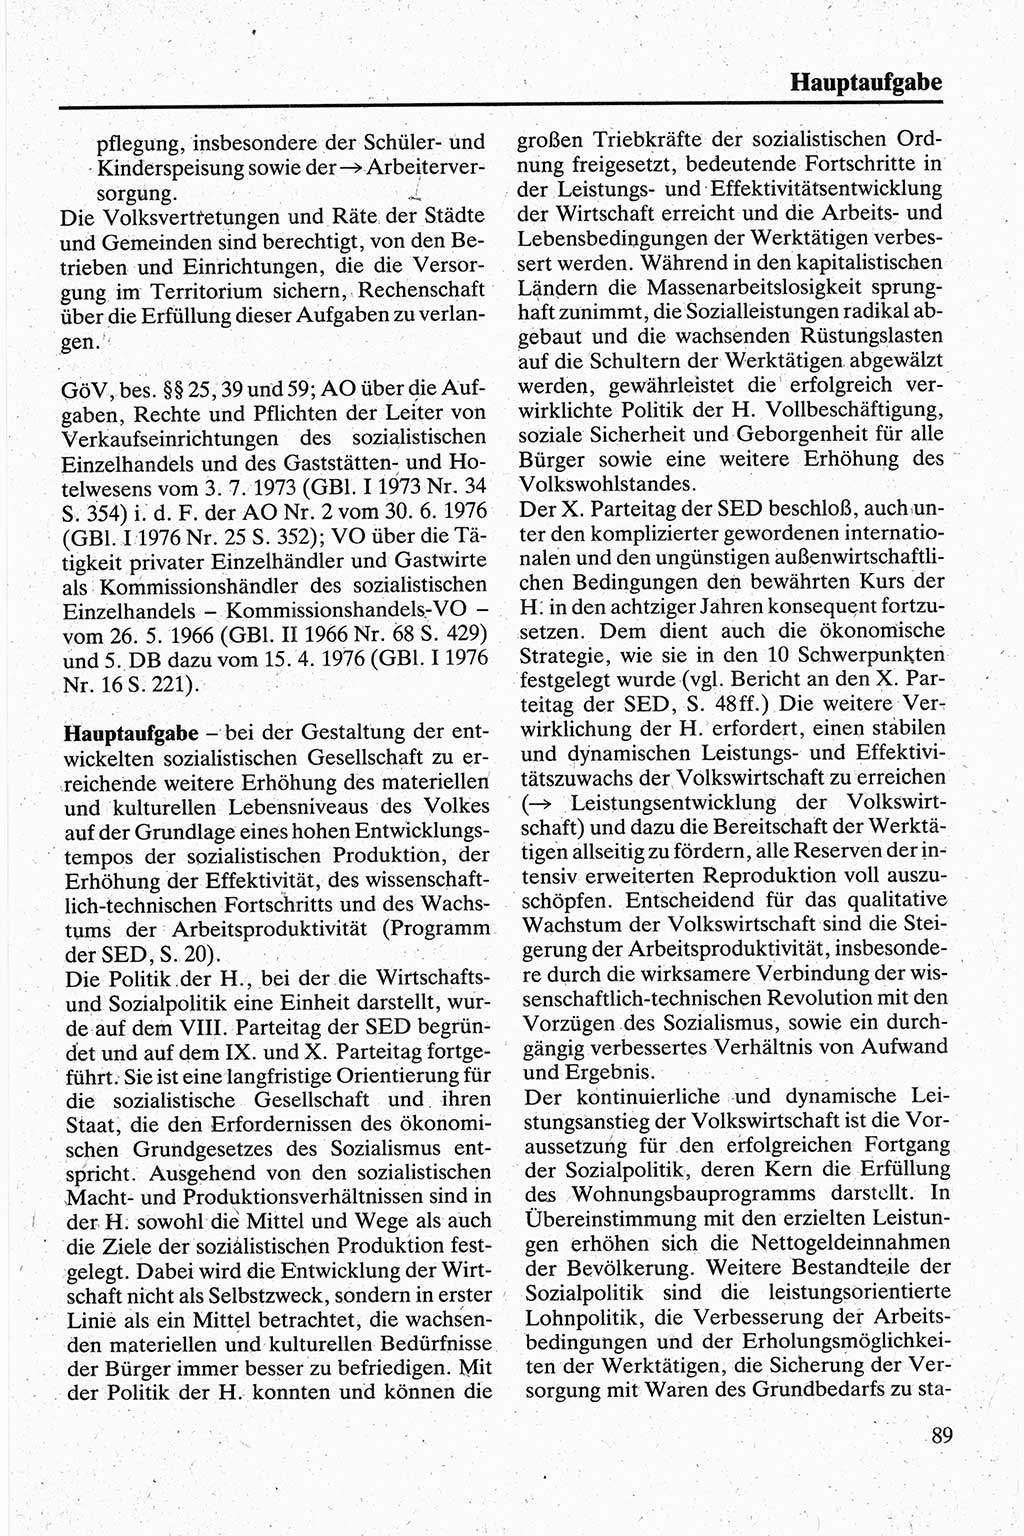 Handbuch für den Abgeordneten [Deutsche Demokratische Republik (DDR)] 1984, Seite 89 (Hb. Abg. DDR 1984, S. 89)